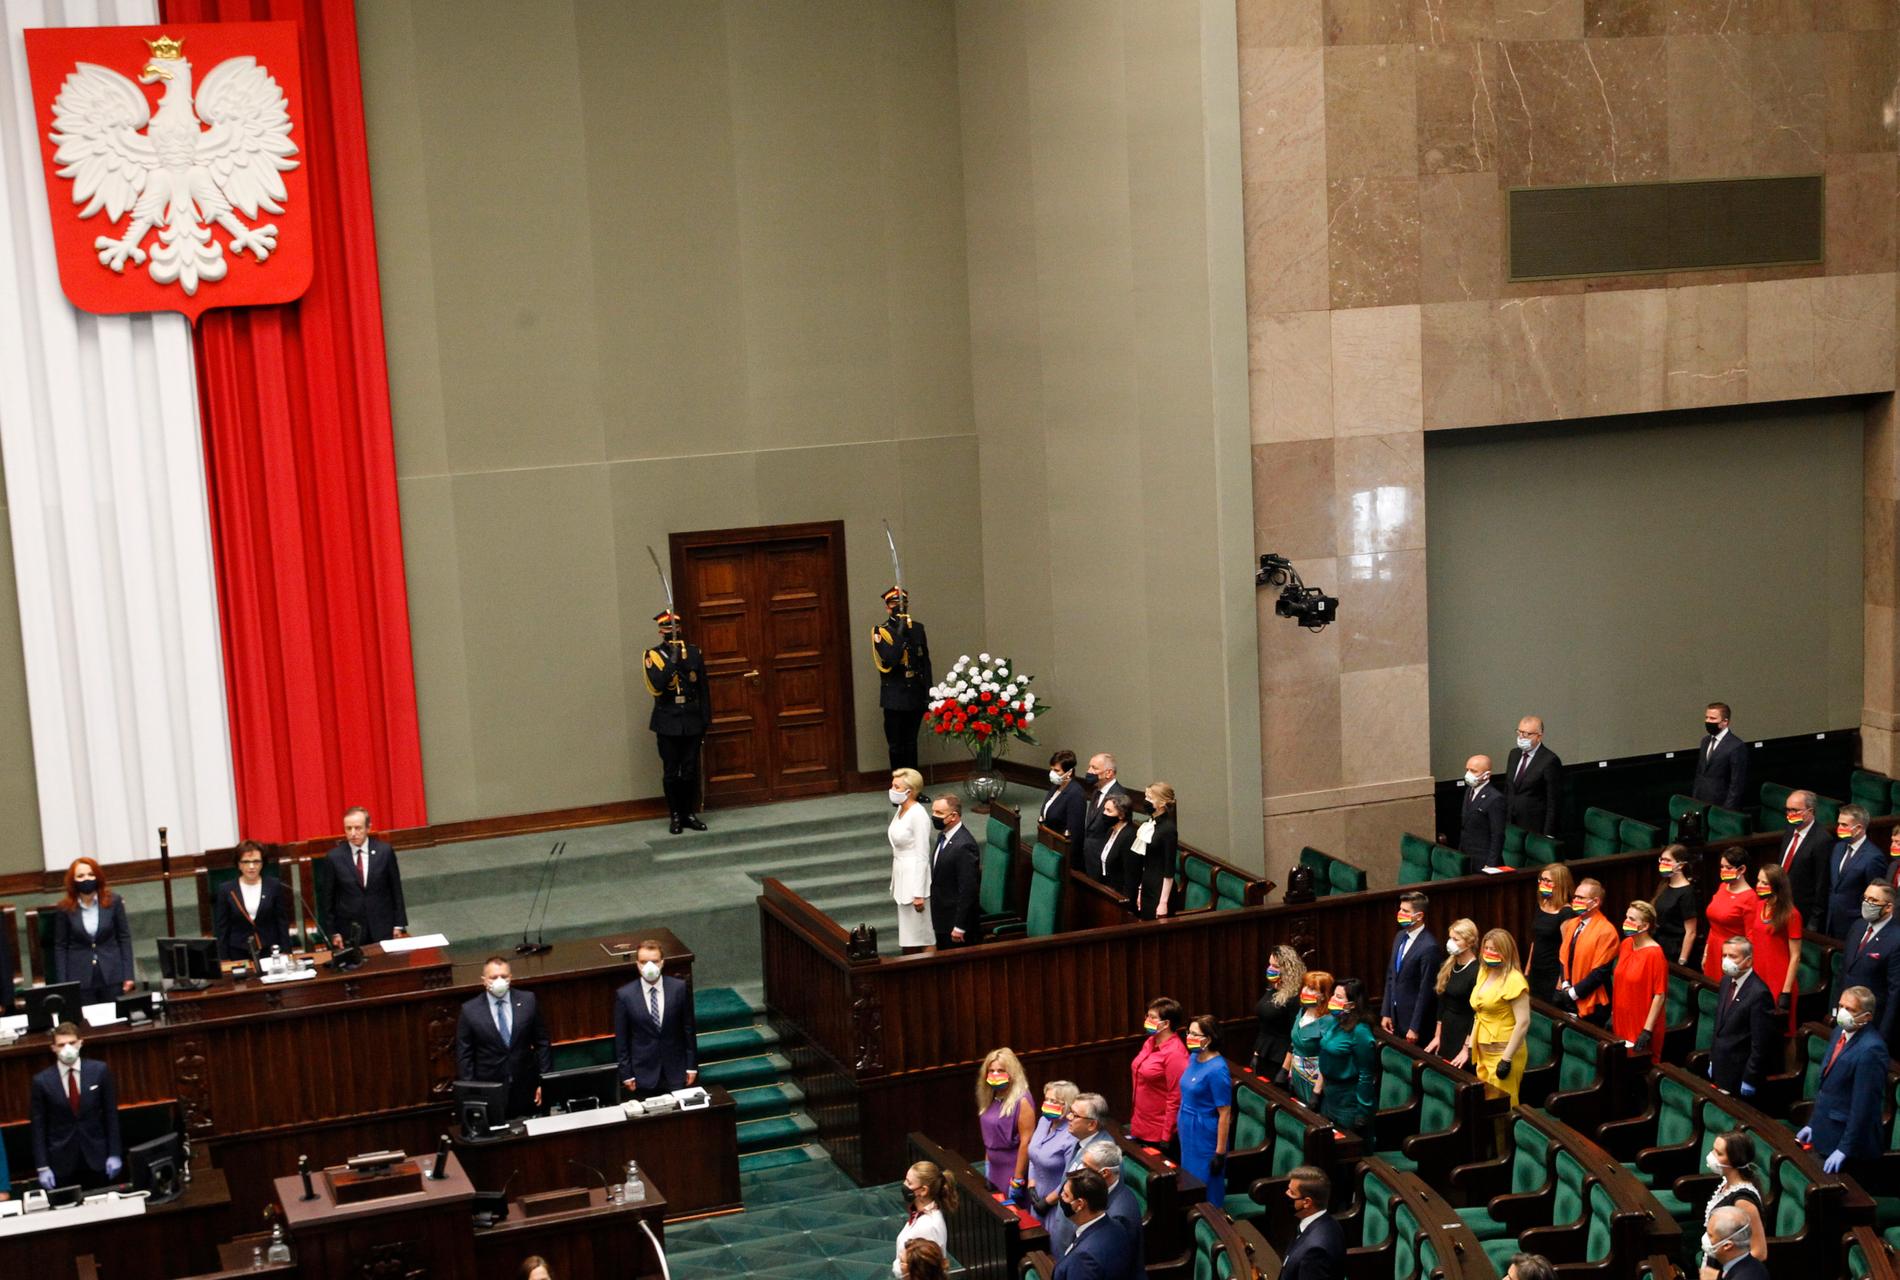 Oppositionen i parlamentet bar regnbågsfärgade kläder när Polens president svors in.